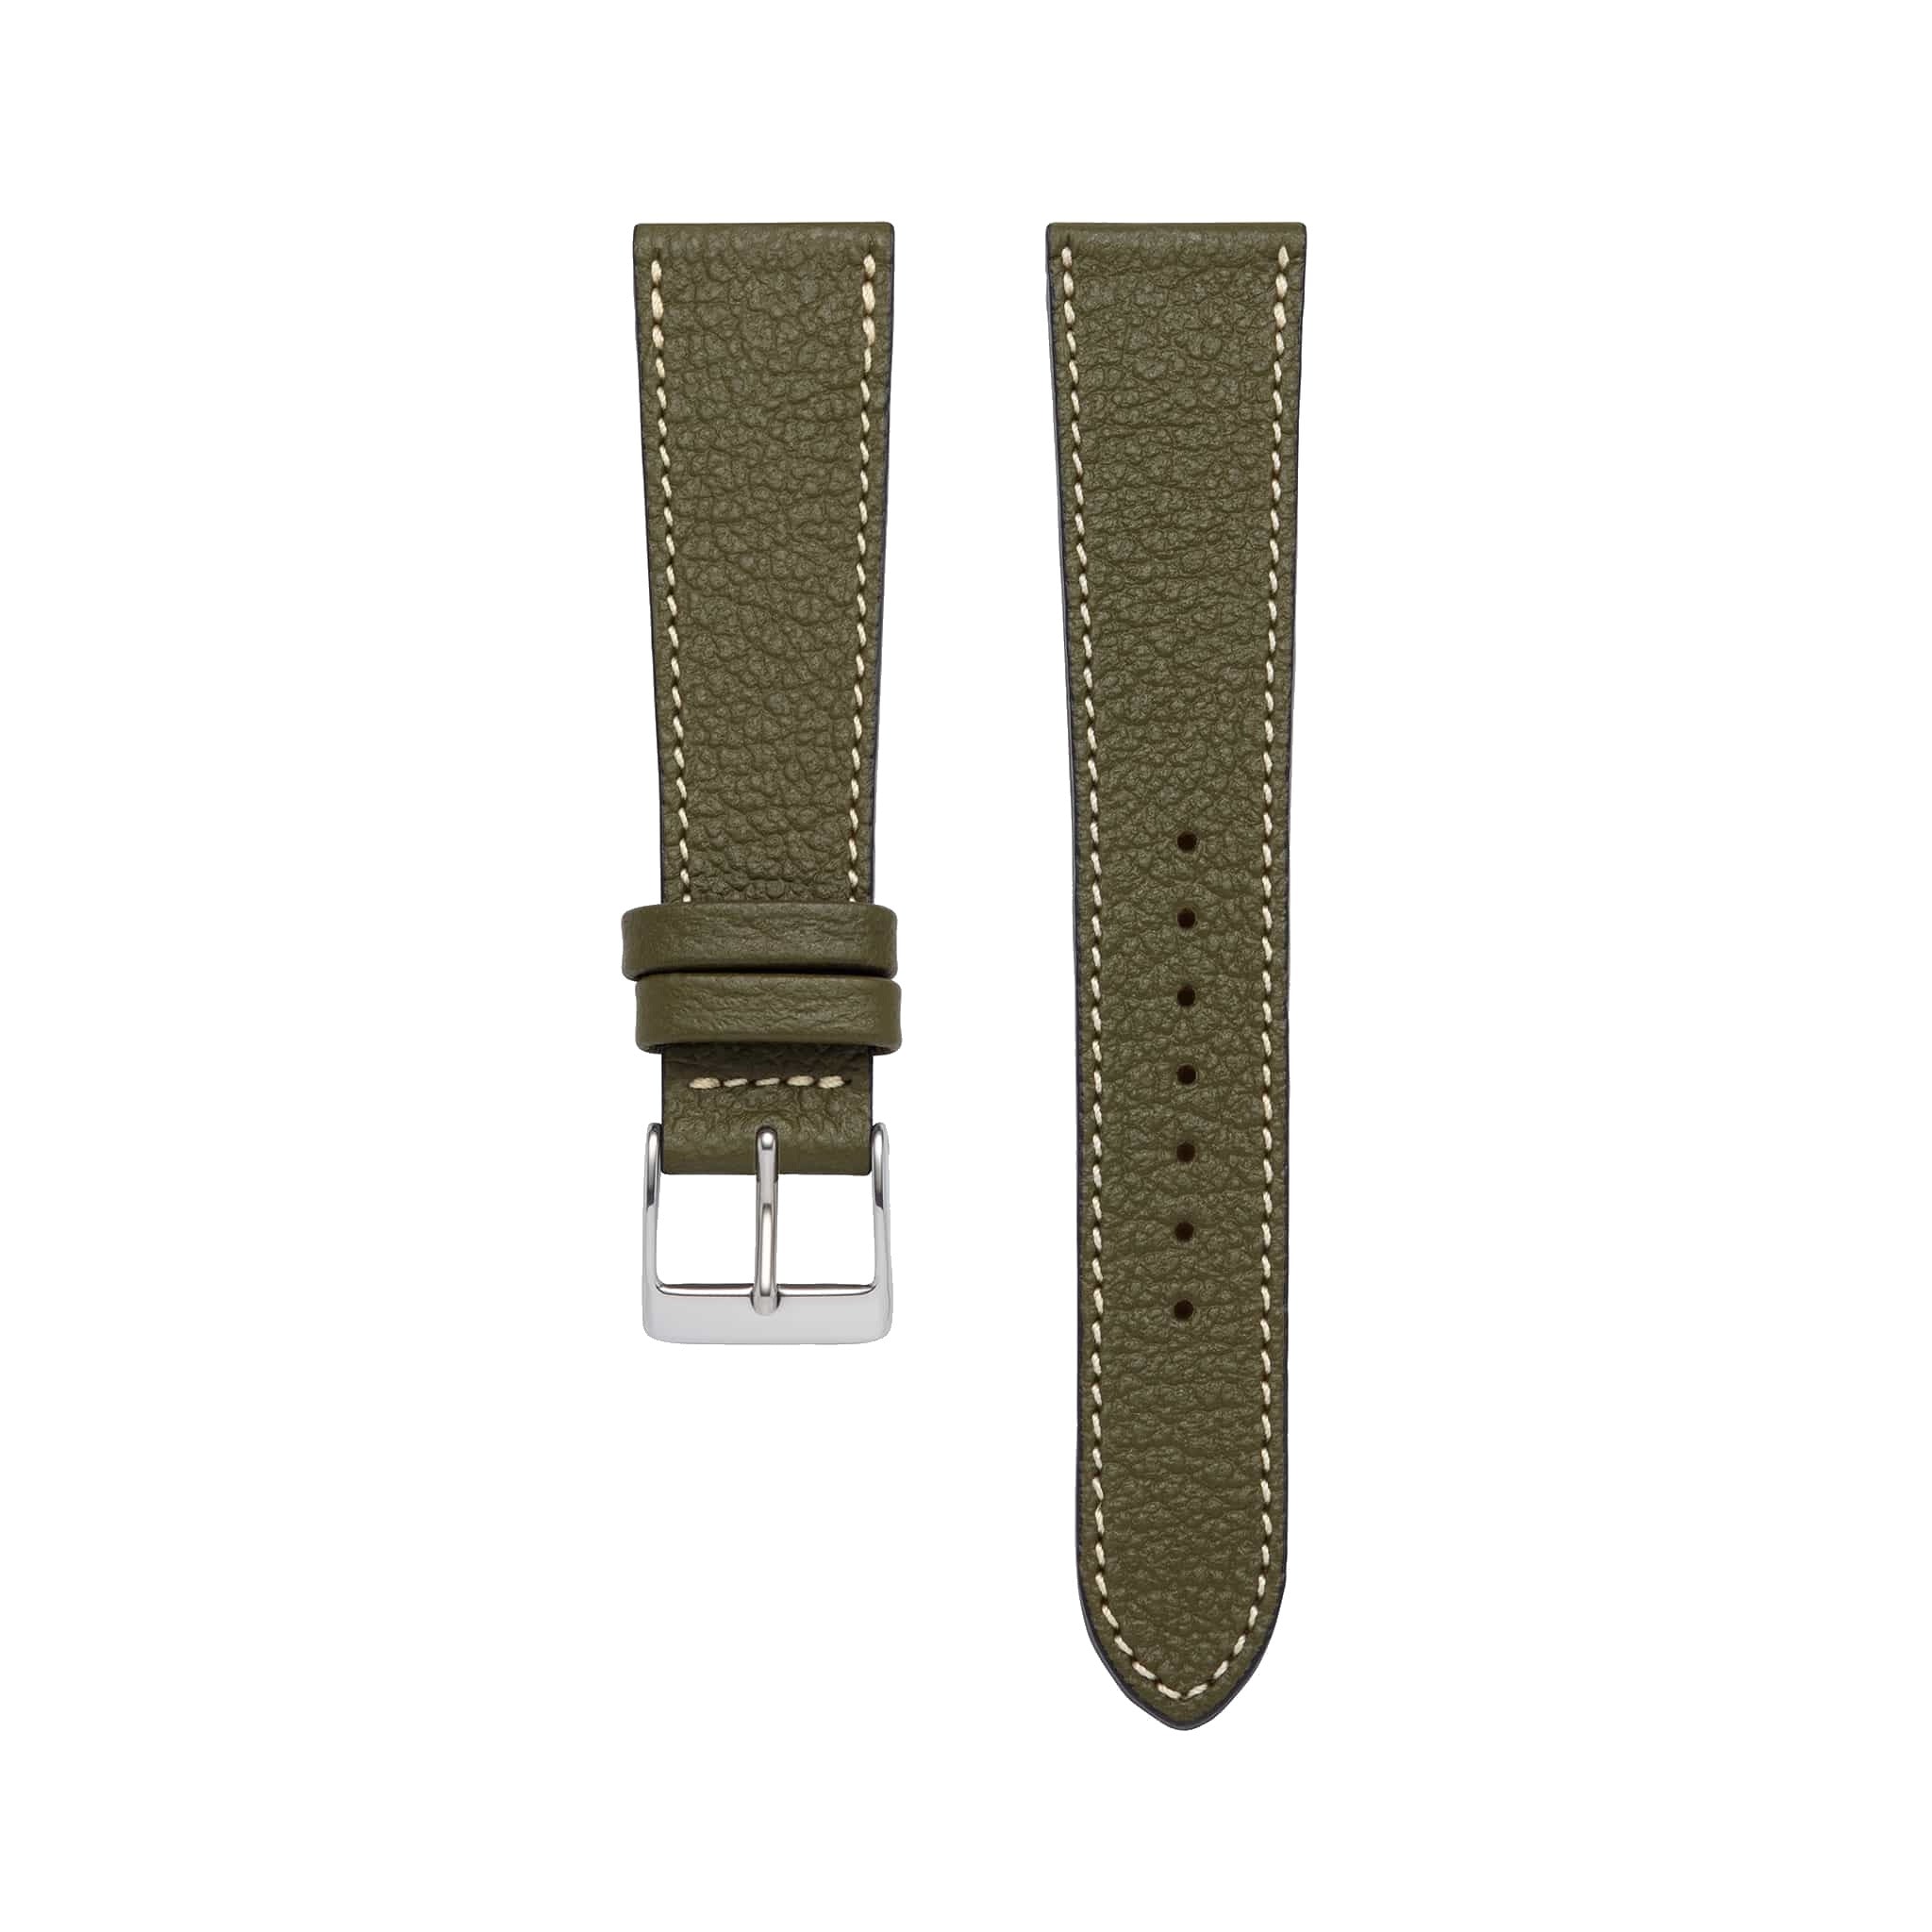 Goat Leather Slim | Armband aus Ziegenleder kompatibel mit Apple Watch-Olivgrün-BerlinBravo